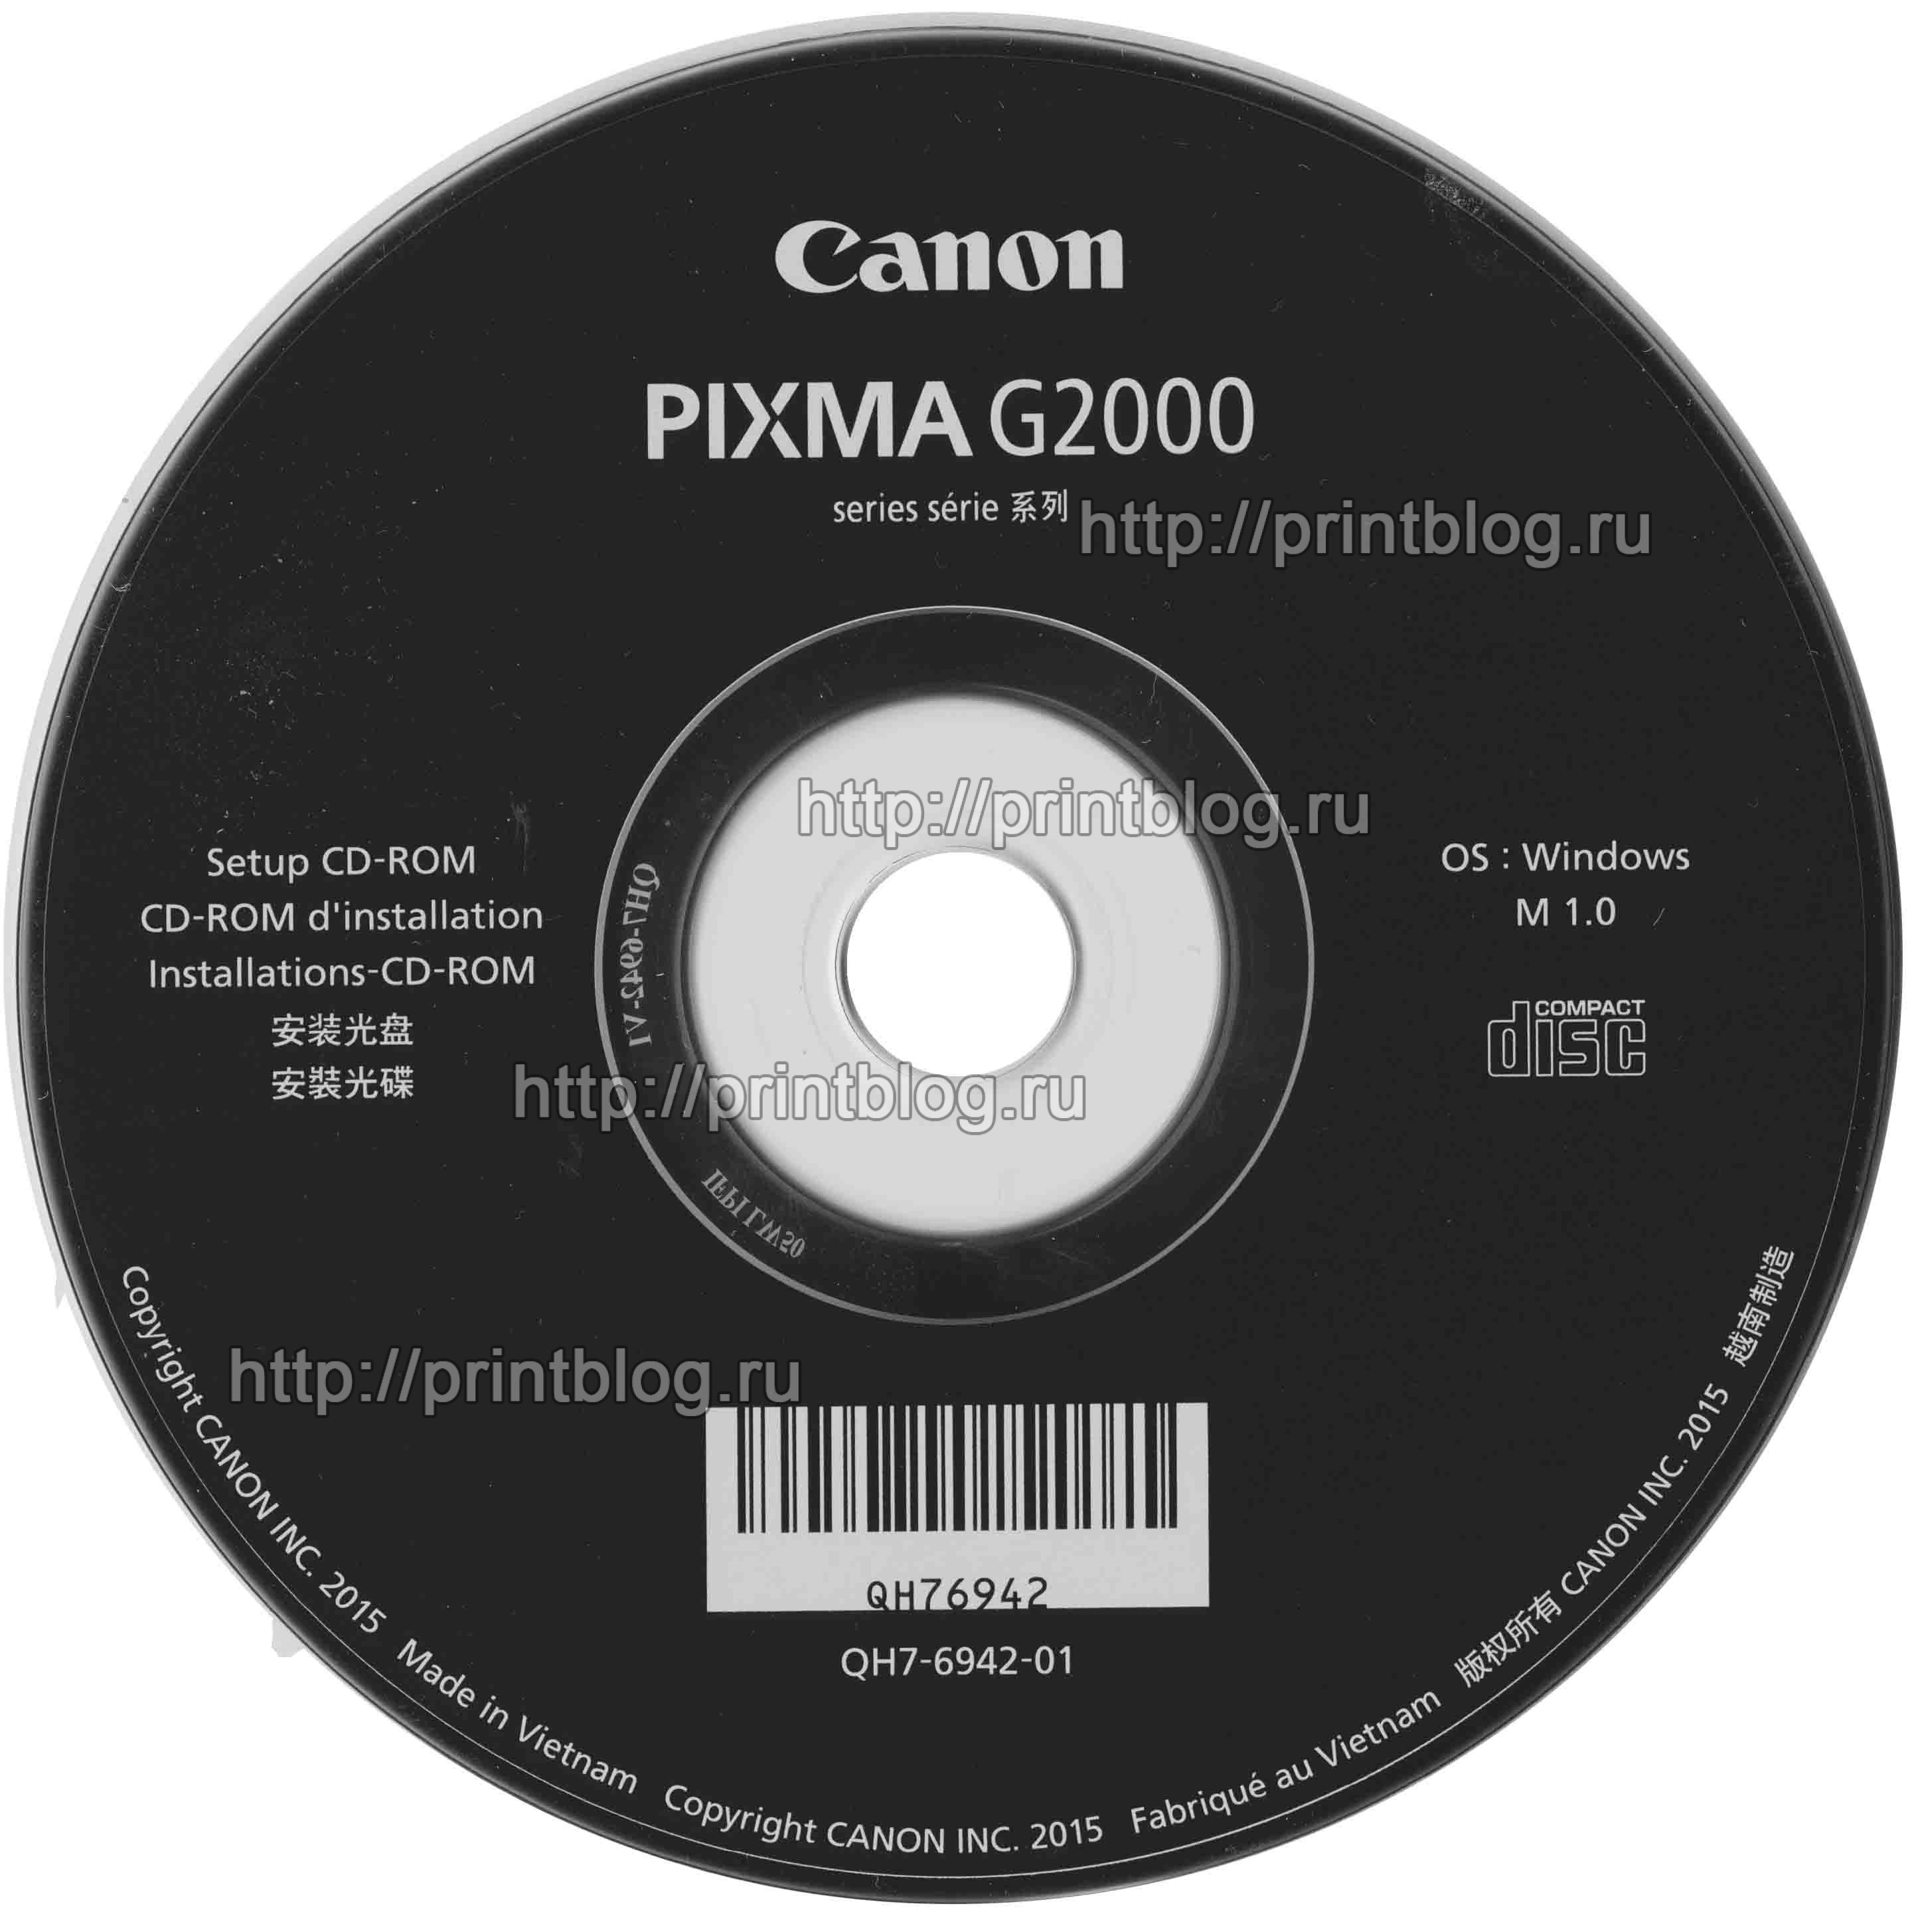 Диск с драйверами Canon G2000 G2400 printblog.ru